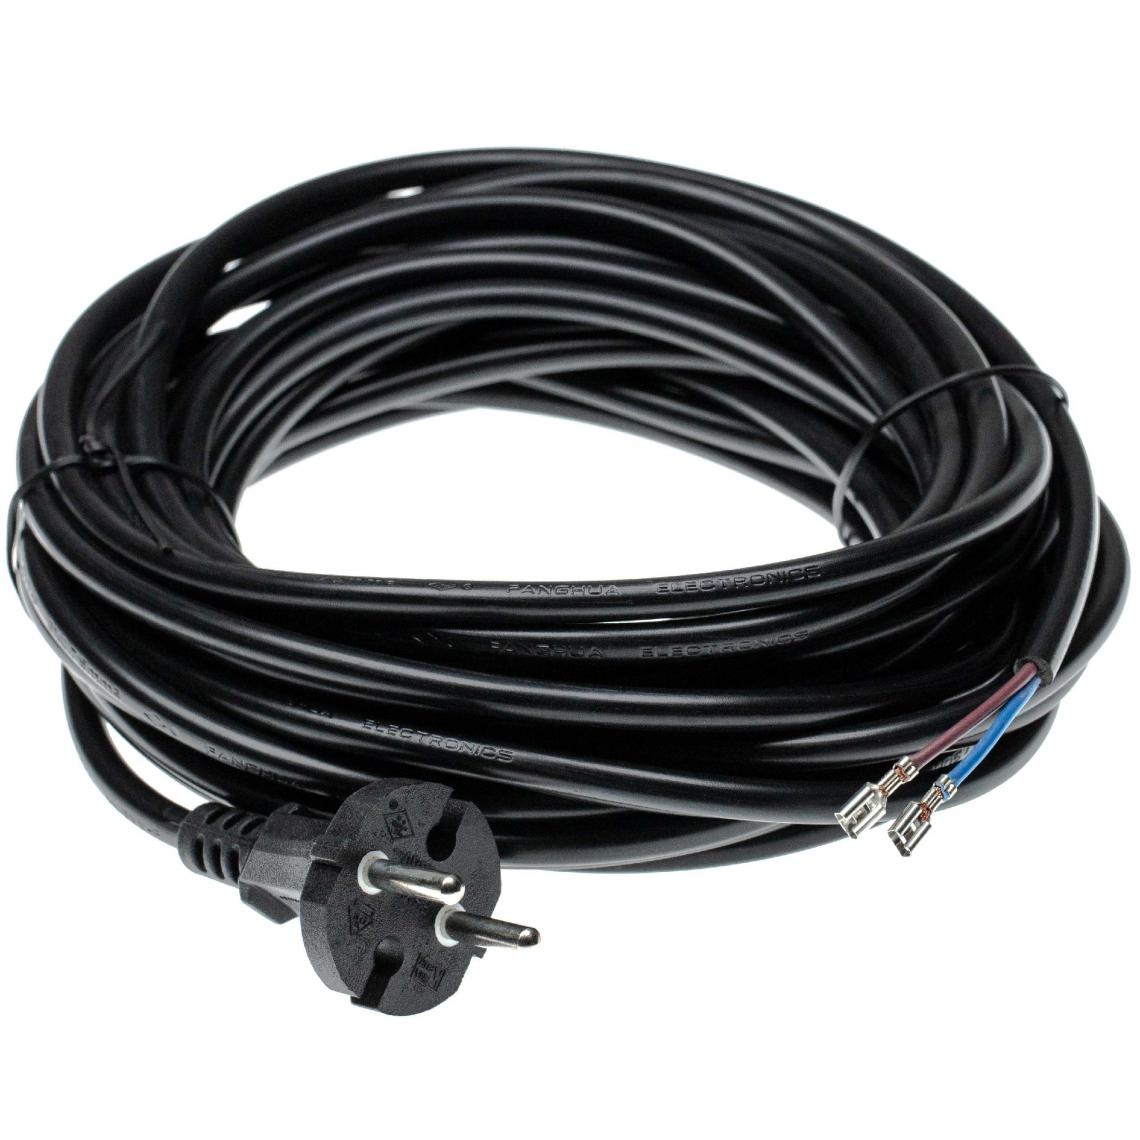 Vhbw - vhbw Câble électrique compatible avec Kärcher NT361, NT48/1, NT501, NT561, NT611 Eco aspirateurs - 10 m, 4000 W - Accessoire entretien des sols